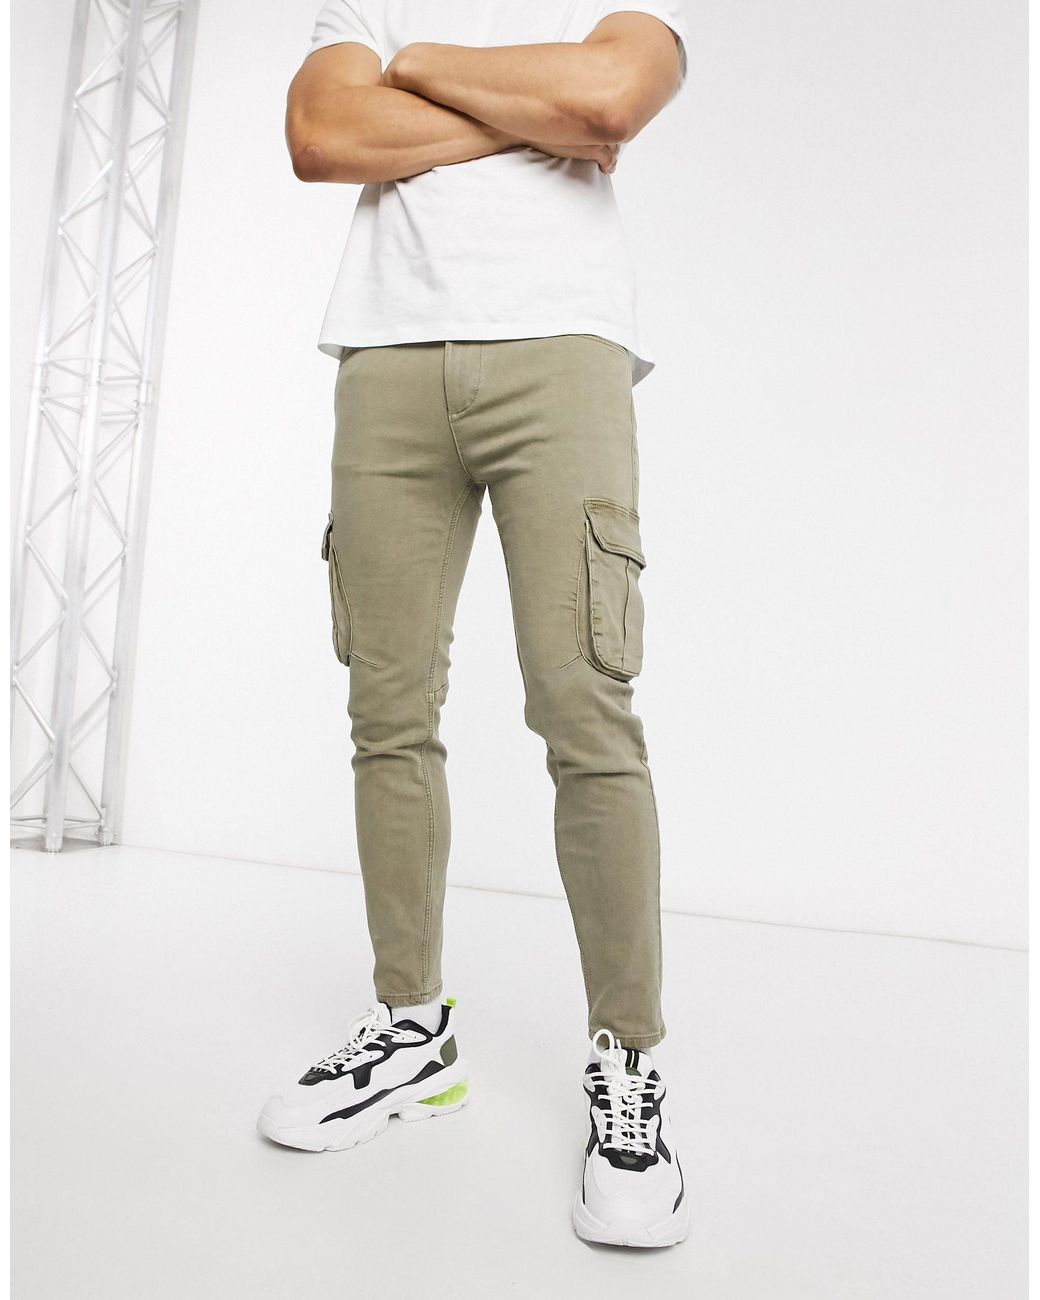 Buy Mens Khaki Slim Fit Cargo Trousers for Men Beige Online at Bewakoof